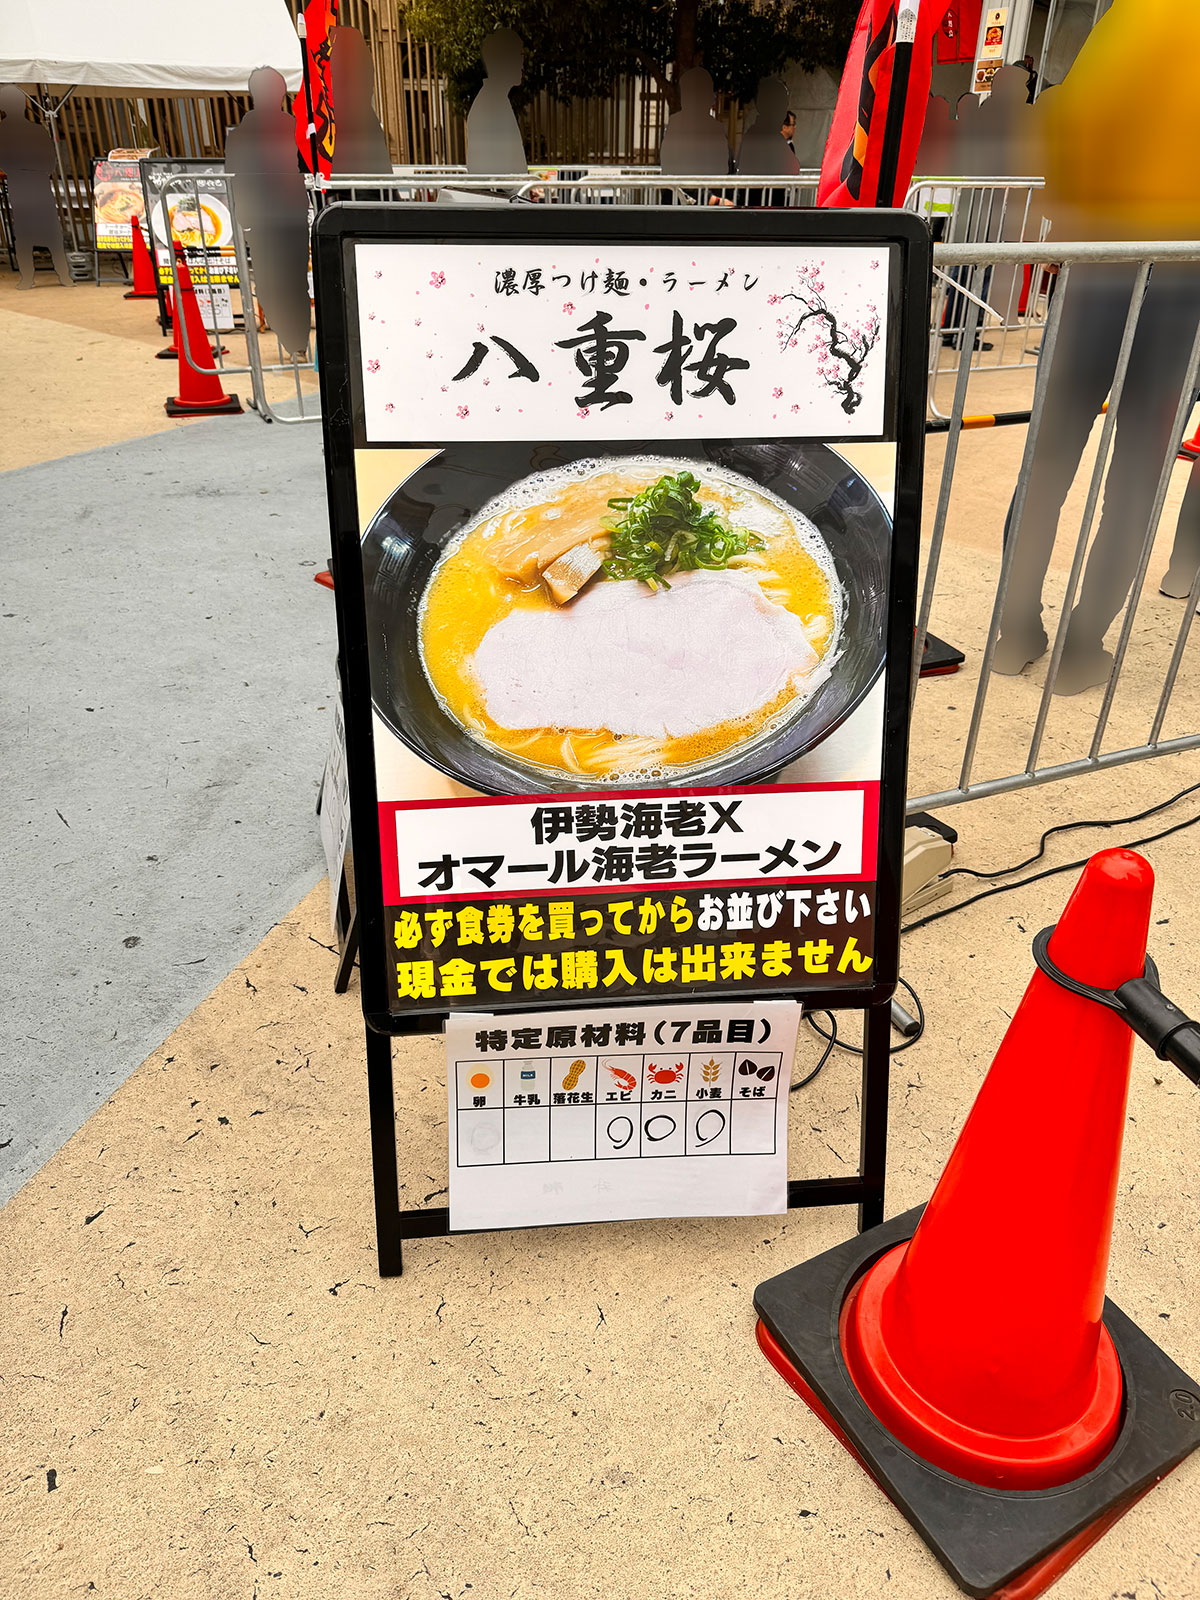 濃厚つけ麺・ラーメン 八重桜ブース入口に掲示された商品案内。